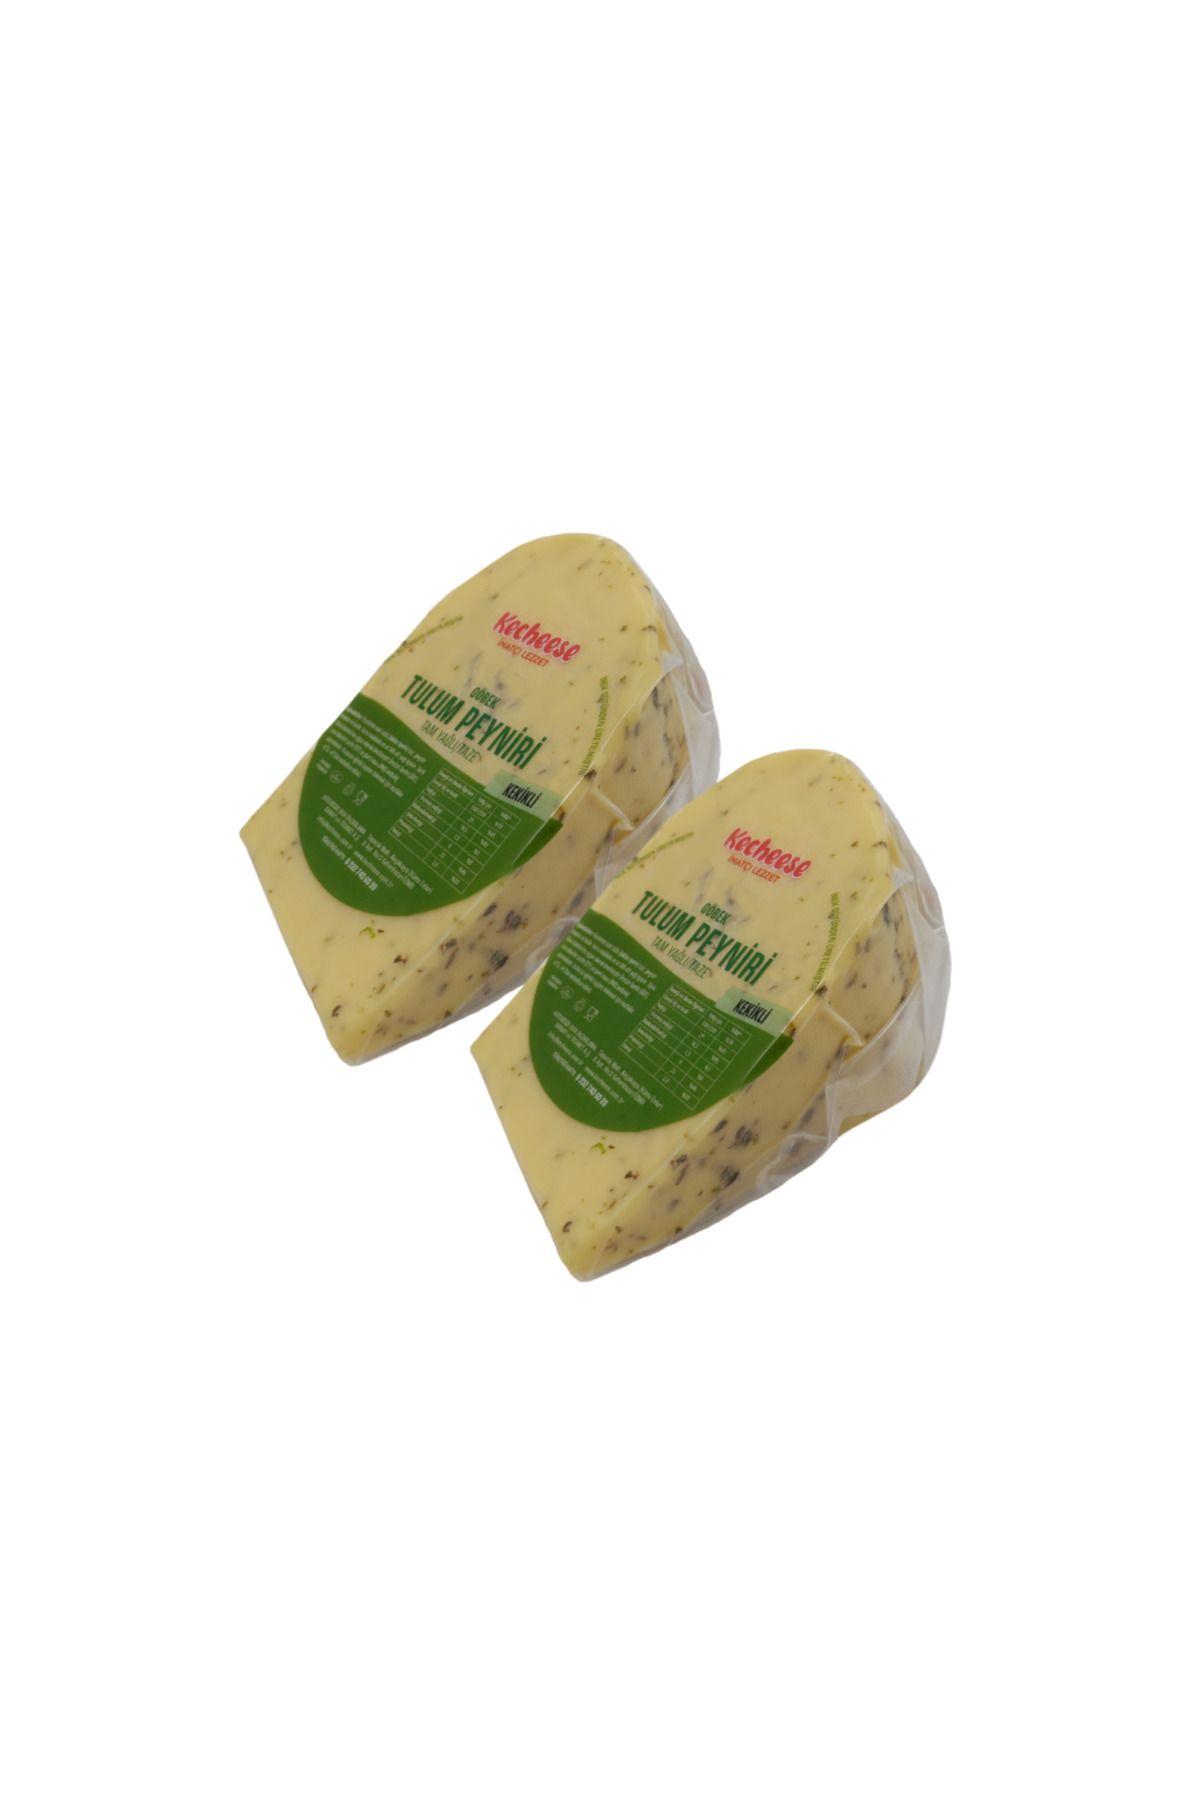 KECHEESE Tam Yağlı Kekikli Göbek Tulum Peyniri 2x500 gr